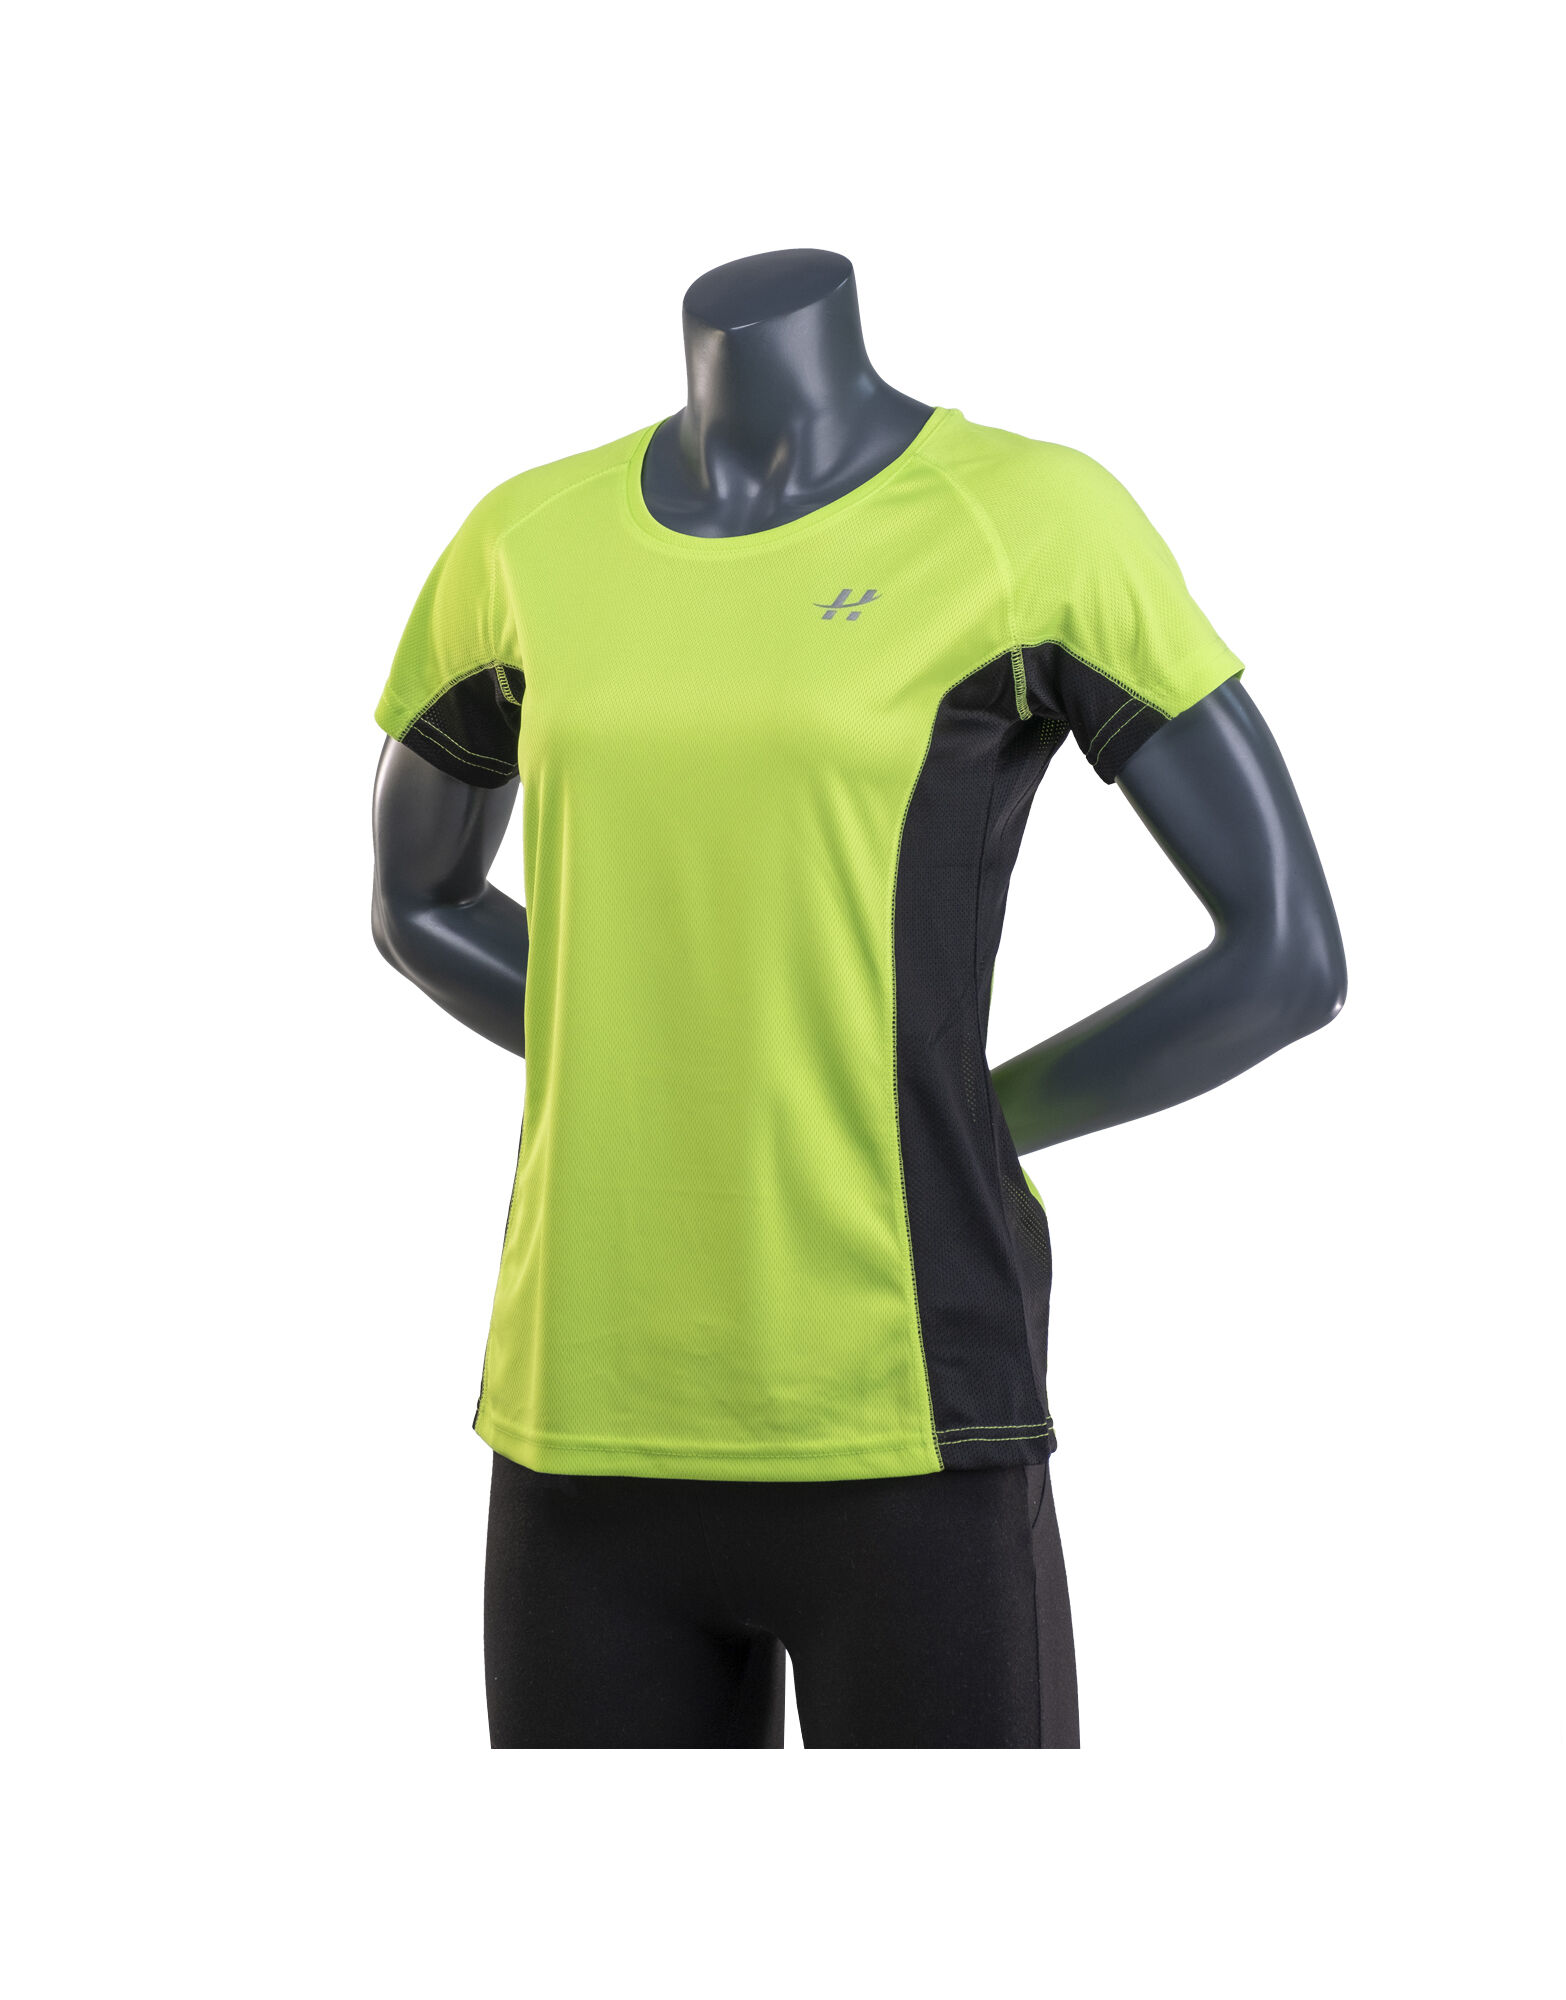 ALPHAZER OUTFIT T-Shirt Tecnica Donna V.2 Colore: Verde / Nero S